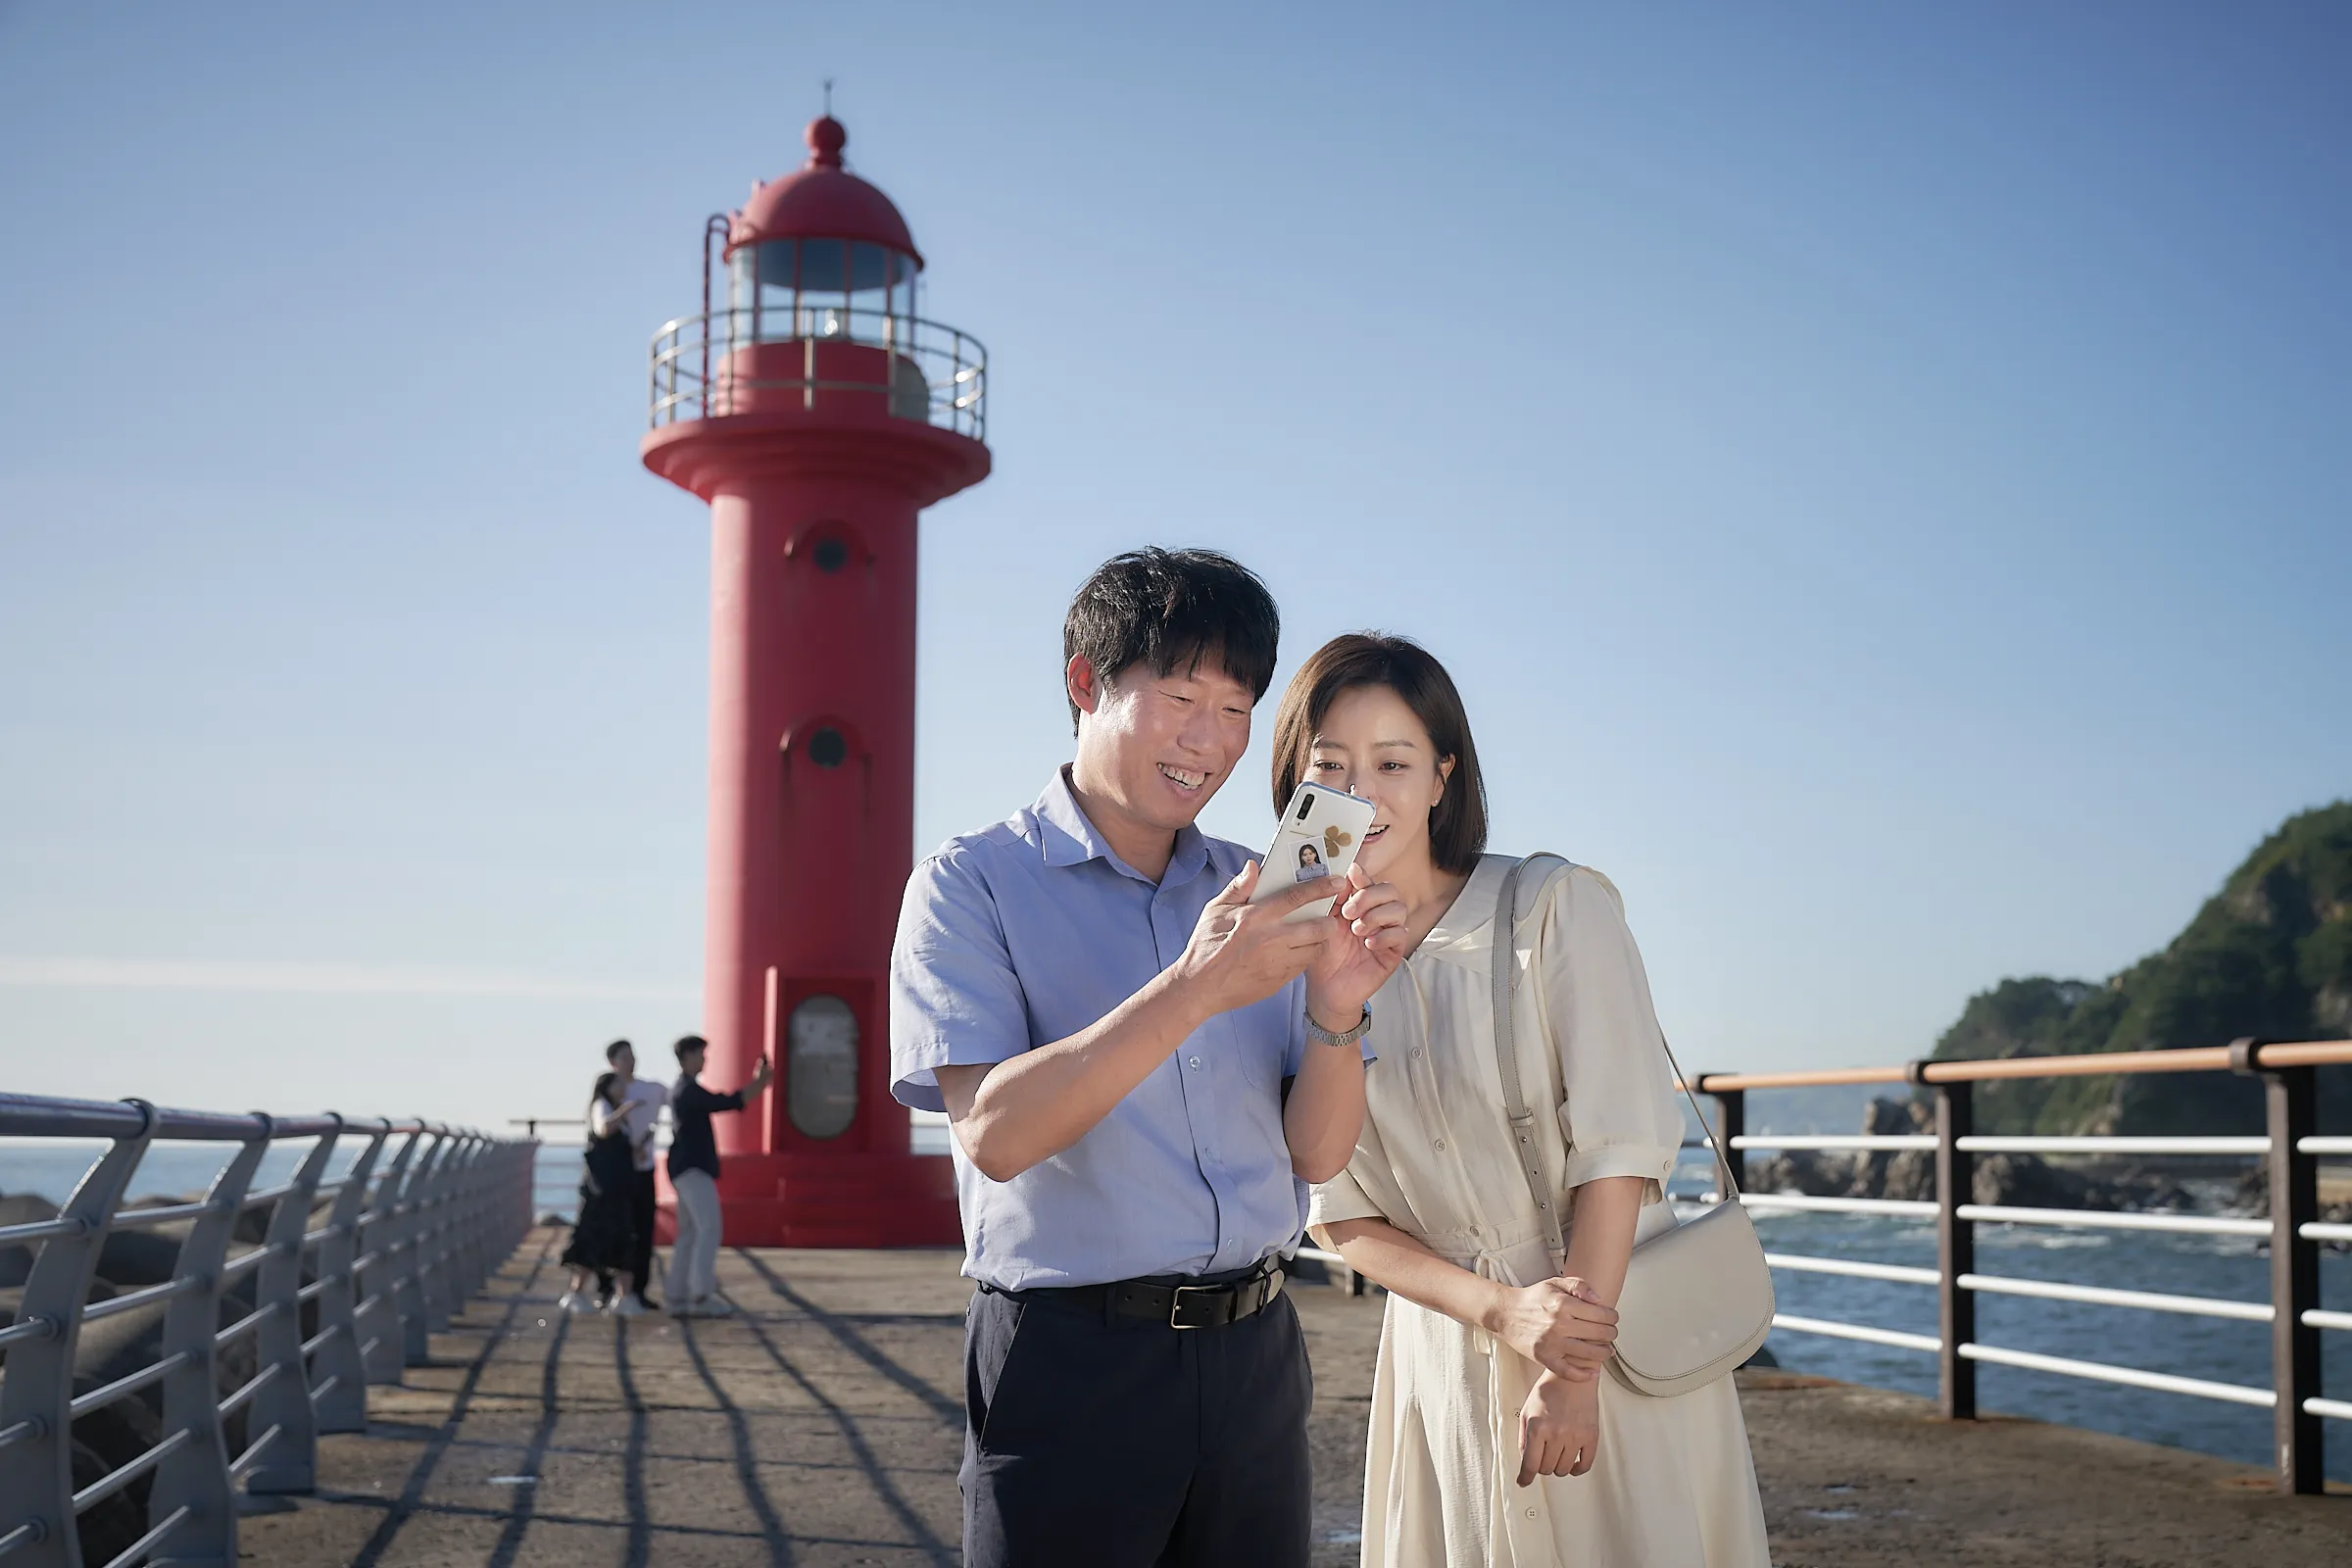 영화 달짝지근해:7510 데이트 중인 치호 일영